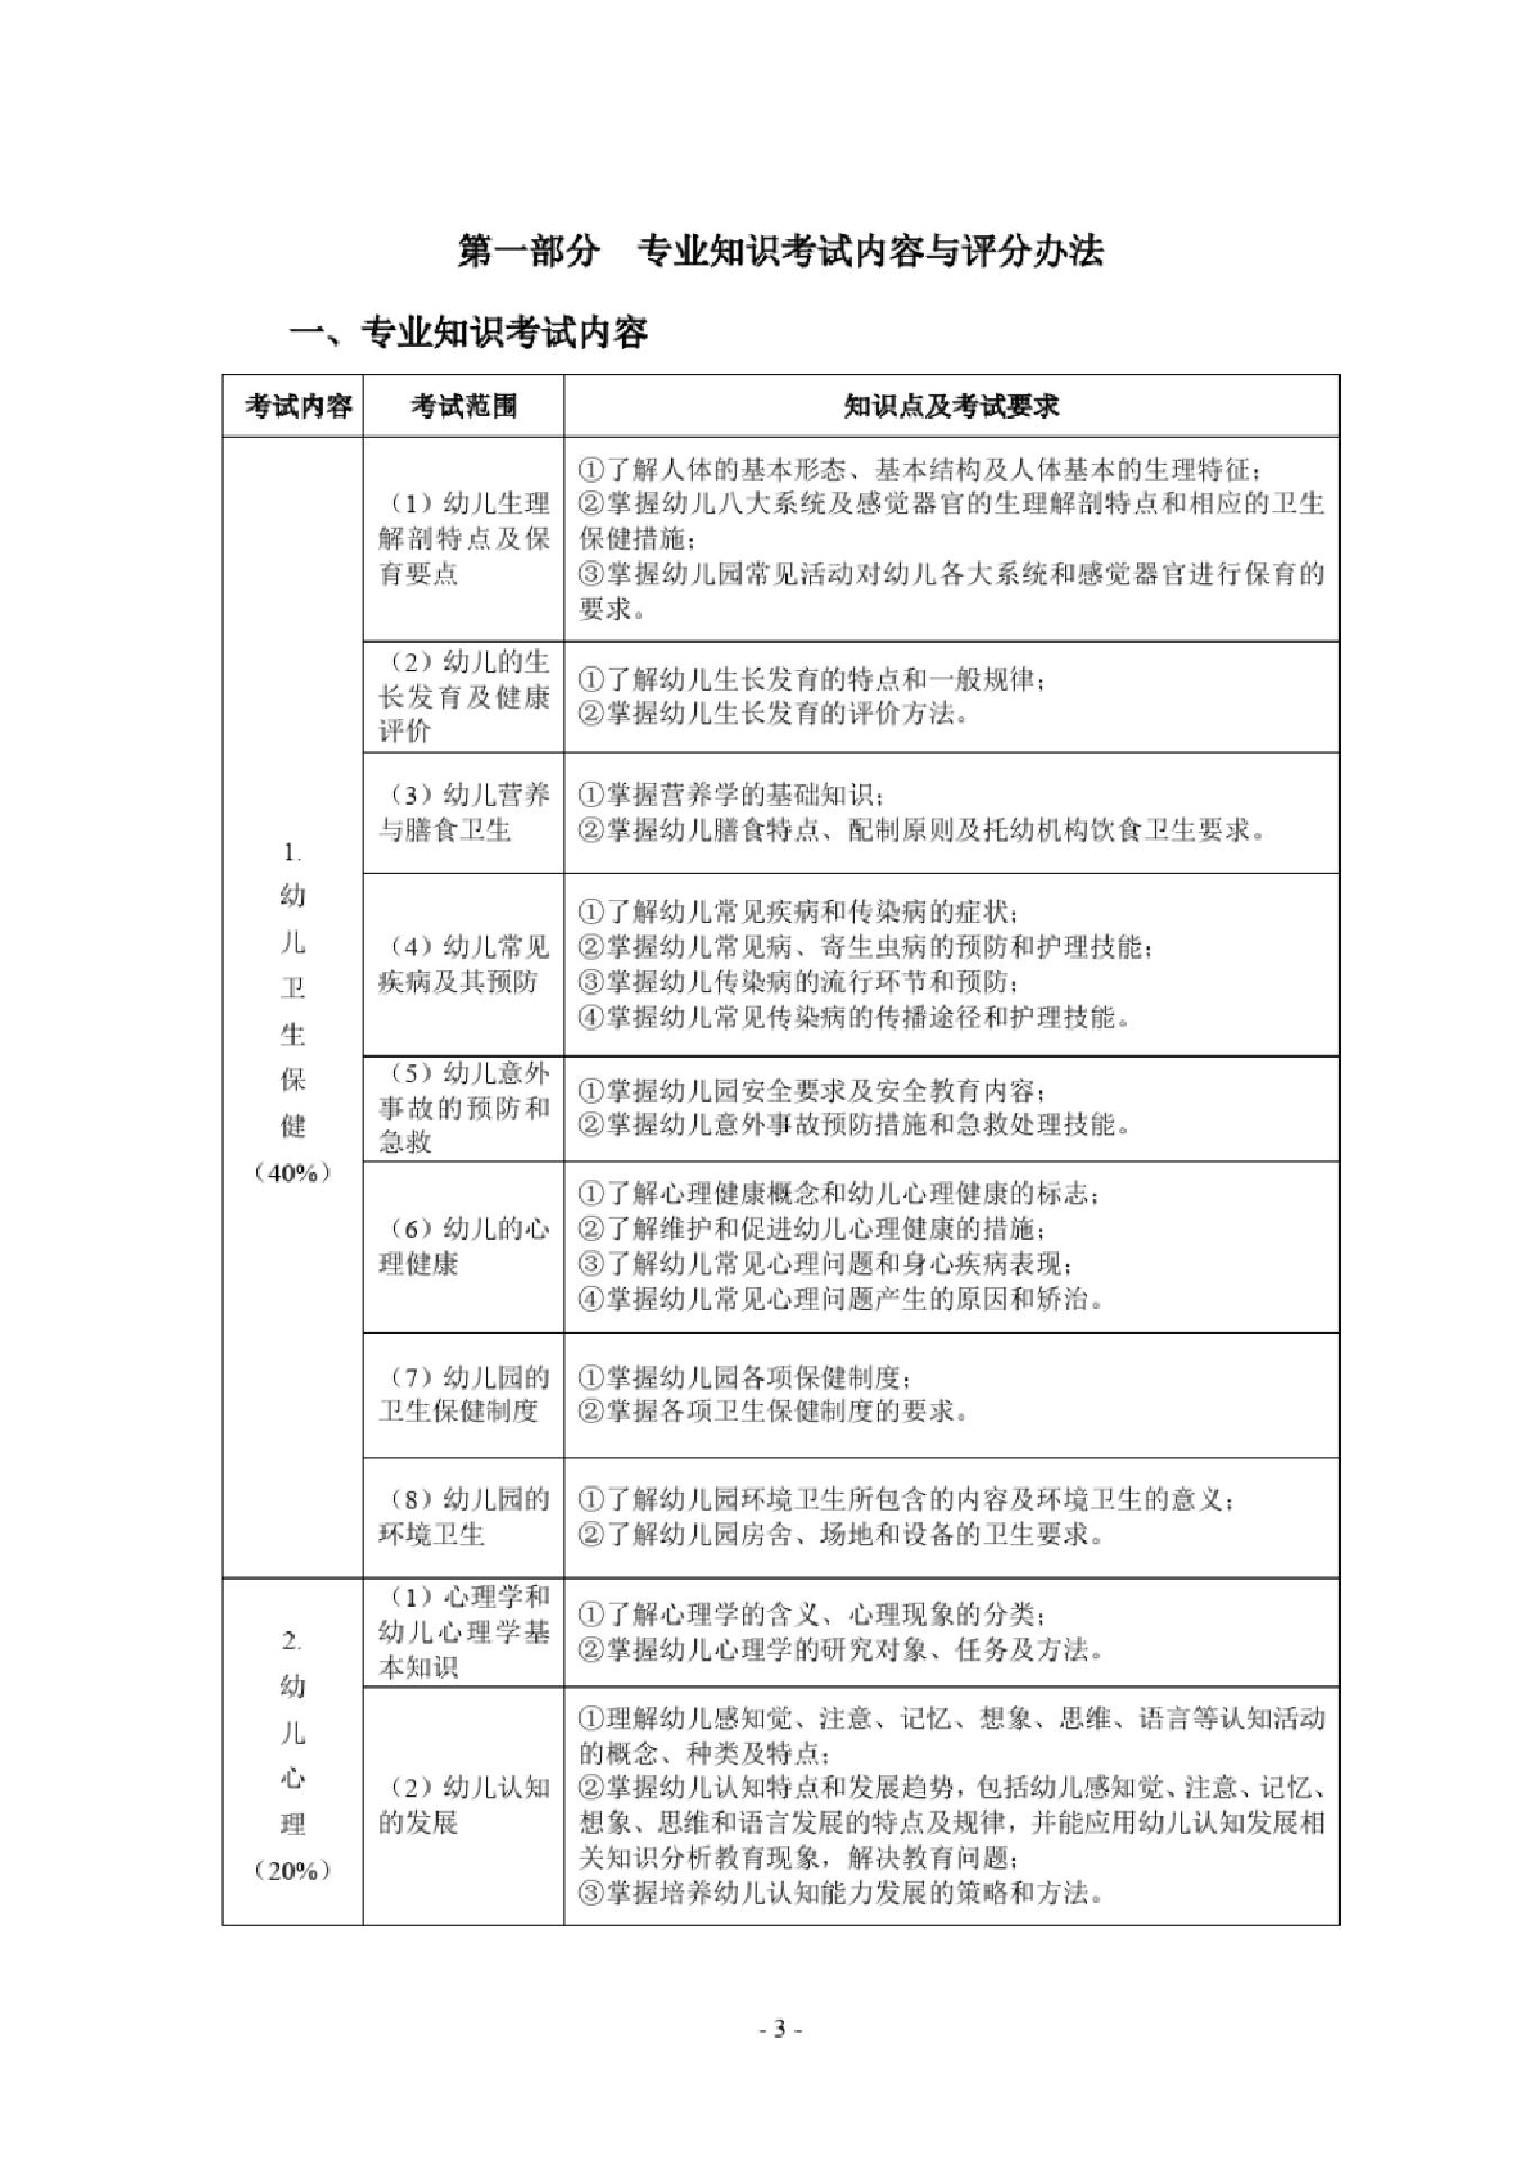 2019年湖北省技能高考技能考试大纲(学前教育专业)